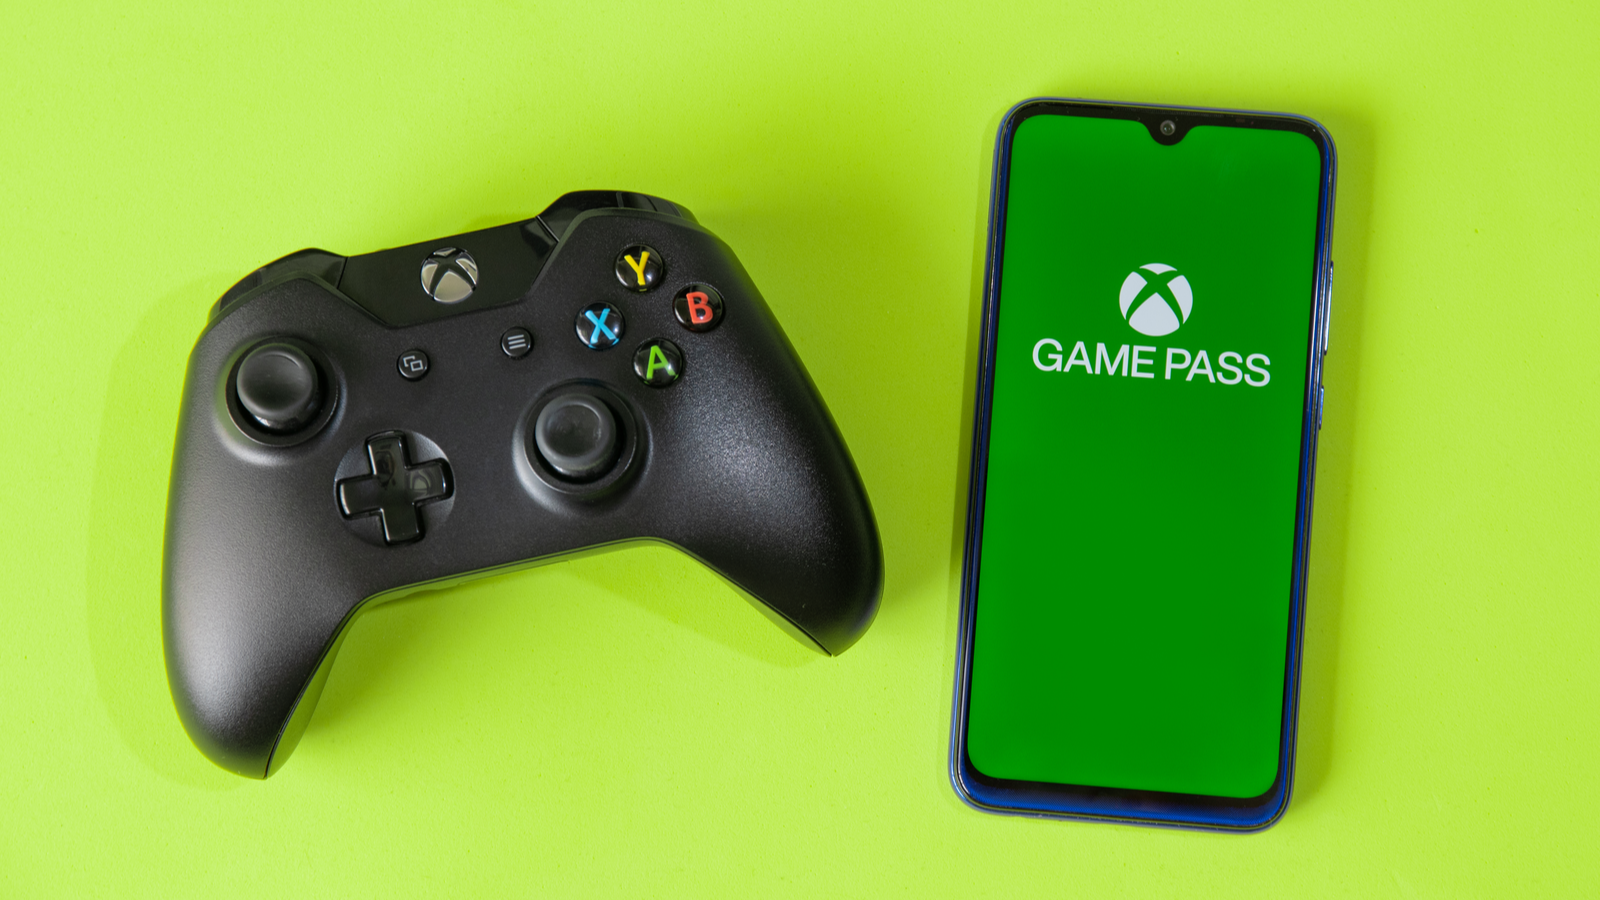 Ứng dụng Xbox Game Pass trên điện thoại thông minh bên cạnh bộ điều khiển Xbox One